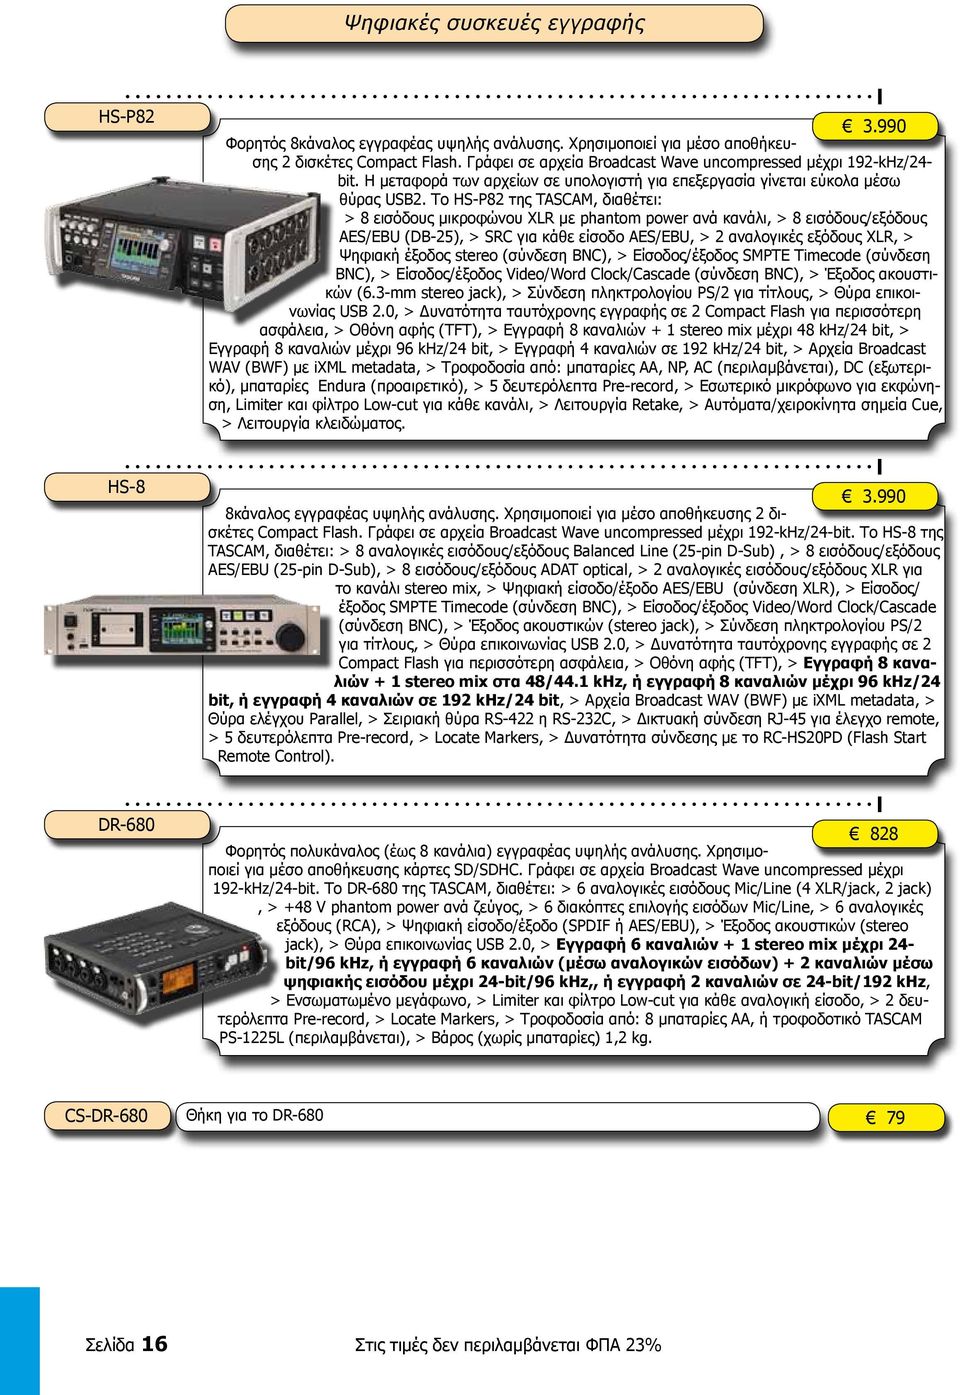 Το HS-P82 της TASCAM, διαθέτει: > 8 εισόδους μικροφώνου XLR με phantom power ανά κανάλι, > 8 εισόδους/εξόδους AES/EBU (DB-25), > SRC για κάθε είσοδο AES/EBU, > 2 αναλογικές εξόδους XLR, > Ψηφιακή